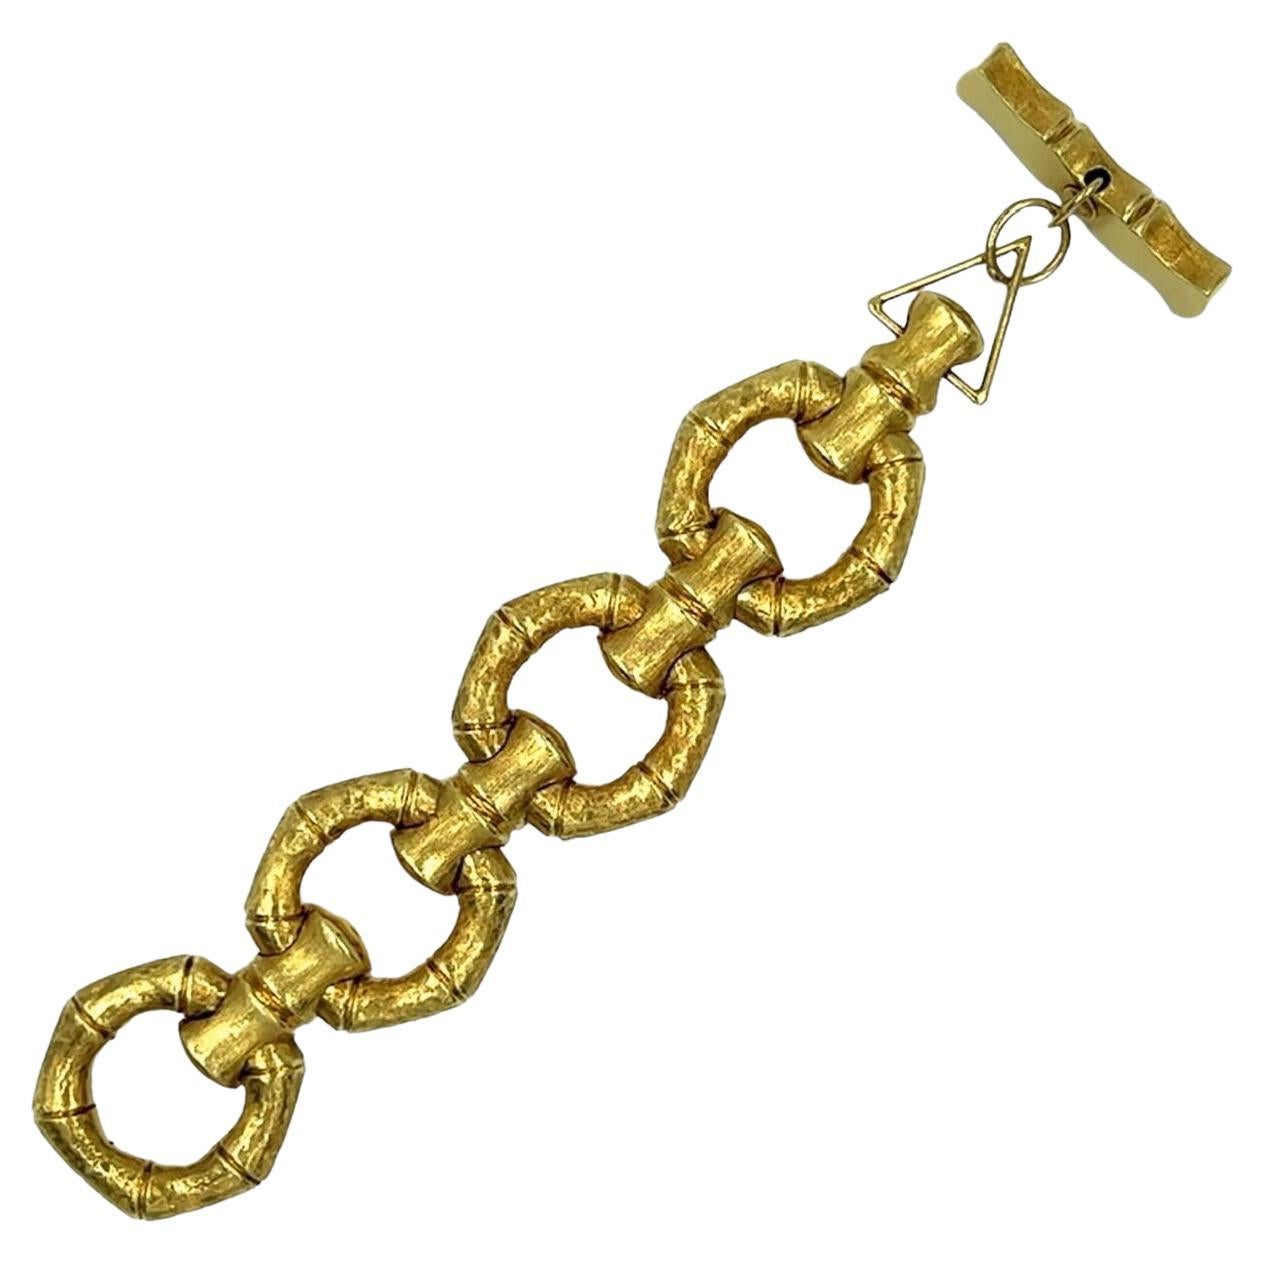 Gold Bamboo Link Bracelet